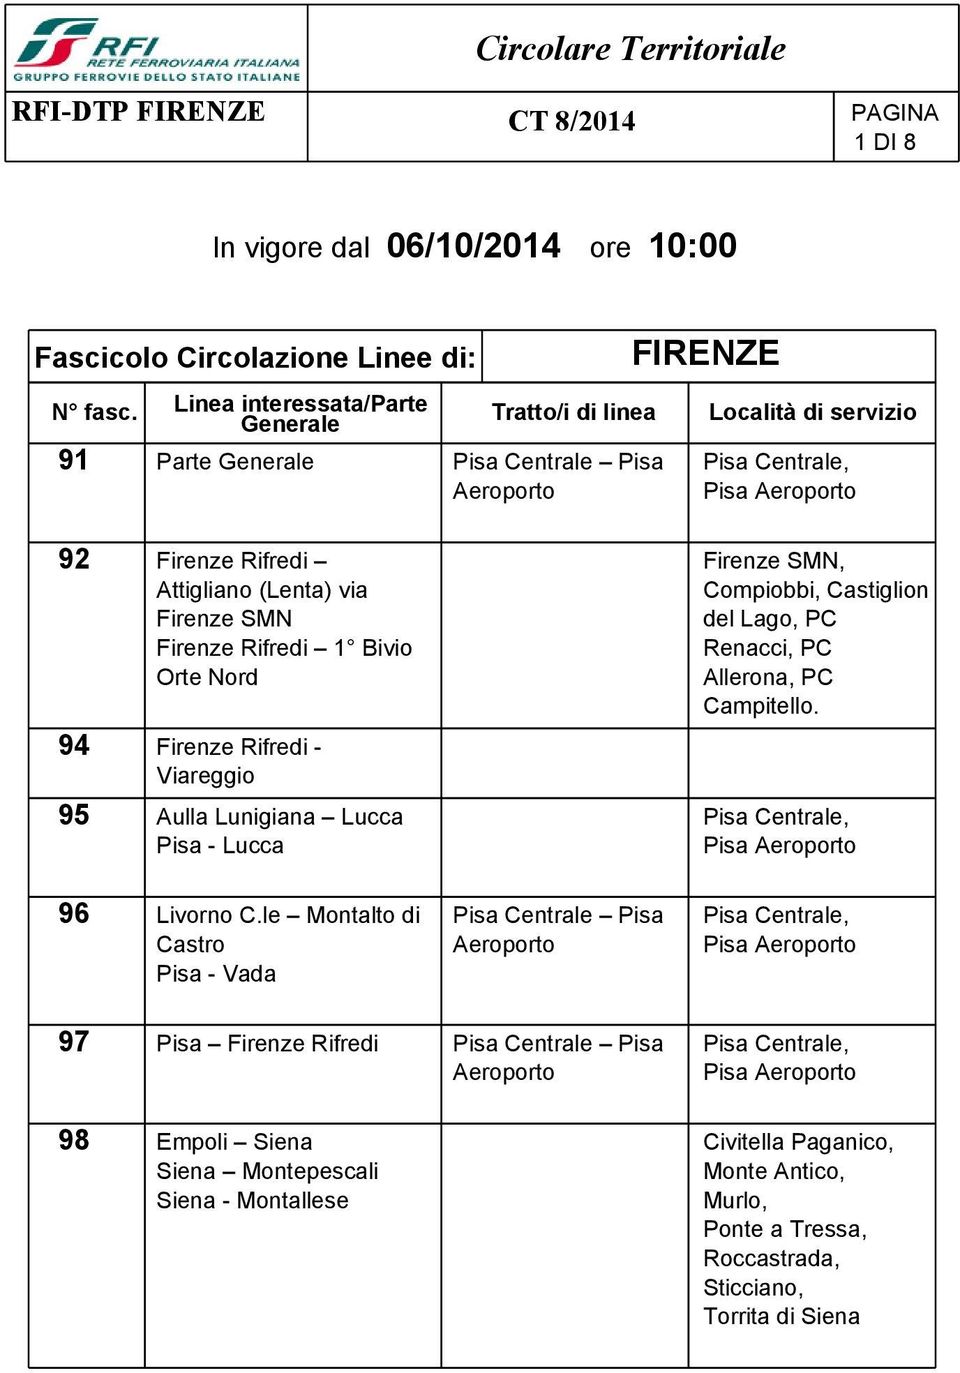 Firenze SMN Firenze Rifredi 1 Bivio Orte Nord 94 Firenze Rifredi - Viareggio 95 Aulla Lunigiana Lucca Pisa - Lucca Firenze SMN, Compiobbi, Castiglion del Lago, PC Renacci, PC Allerona, PC Campitello.